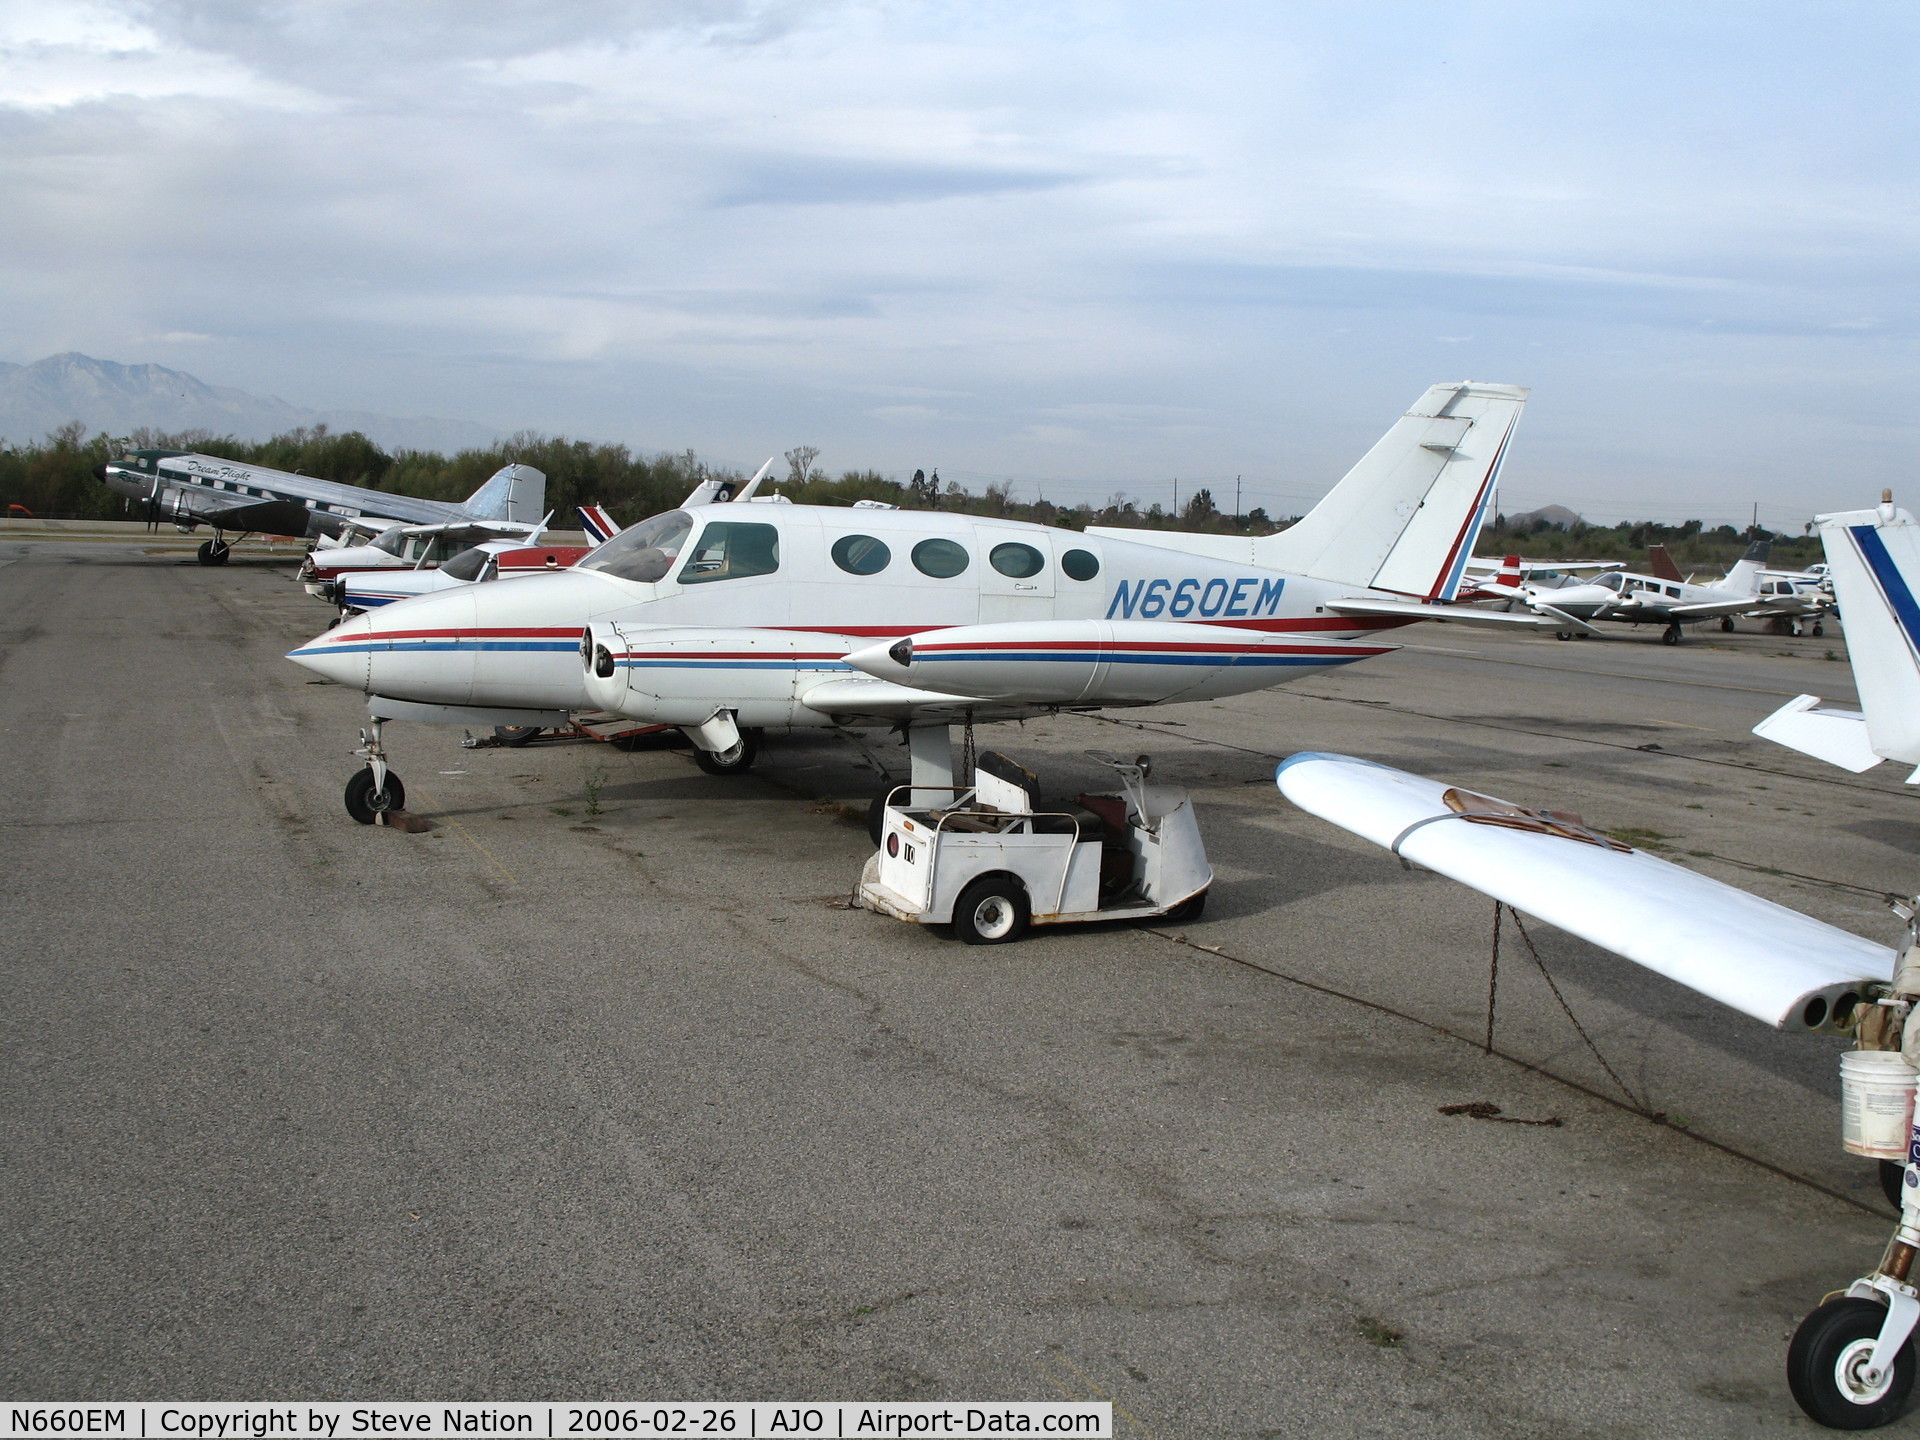 N660EM, 1966 Cessna 411 C/N 411-0142, 1966 Cessna 411 (no prop blades) @ Corona Municipal Airport, CA